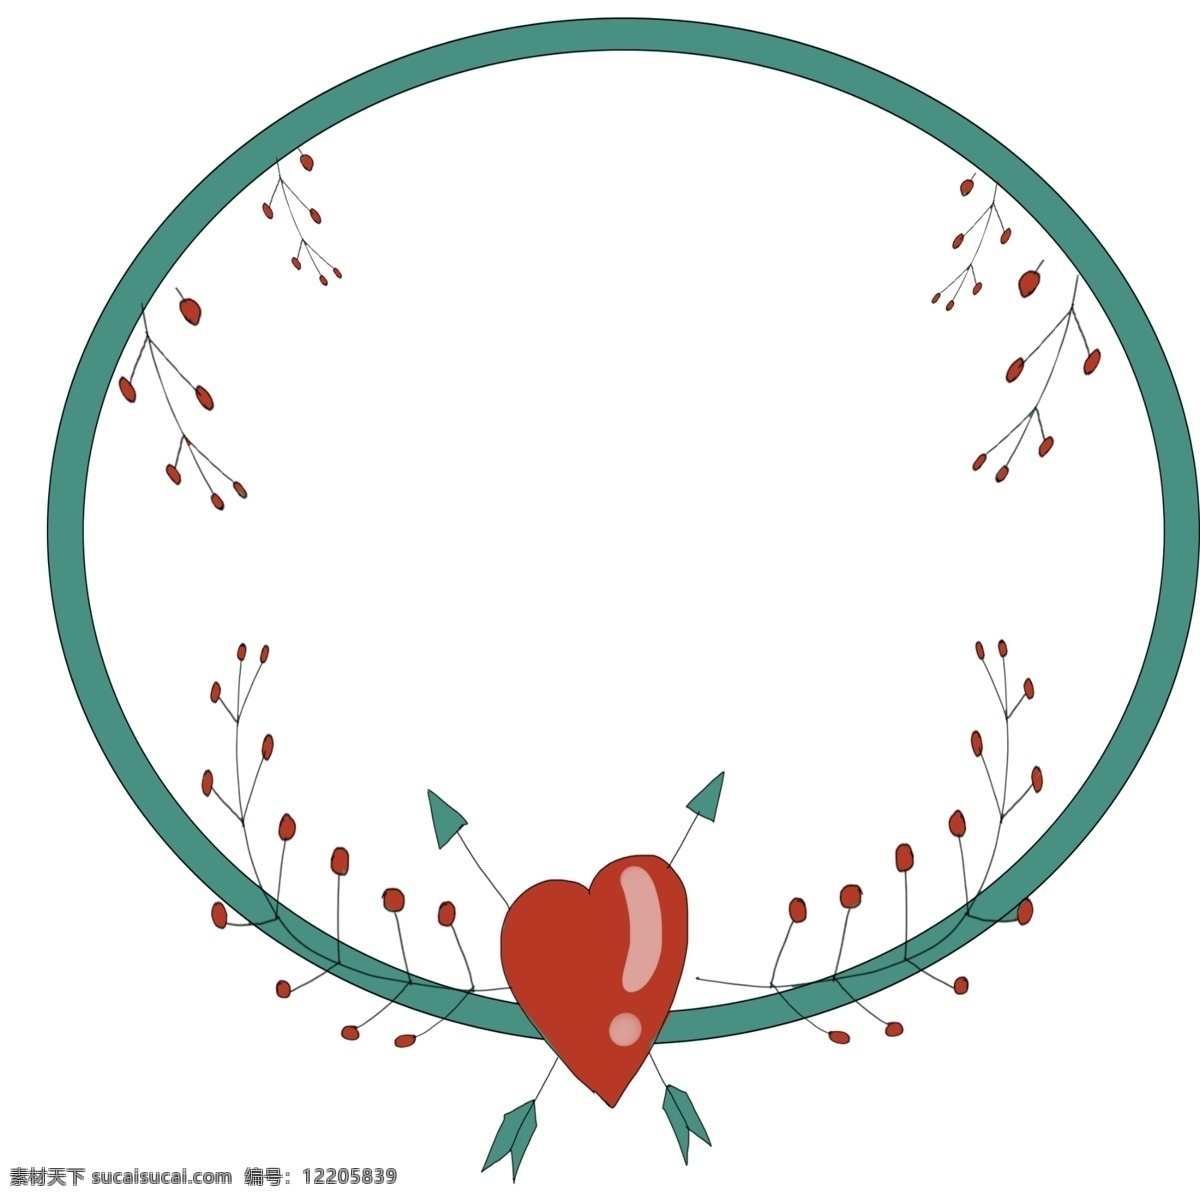 圆形 爱情 边框 插画 蓝色 圆形爱情边框 手绘爱情边框 可爱 卡通爱情边框